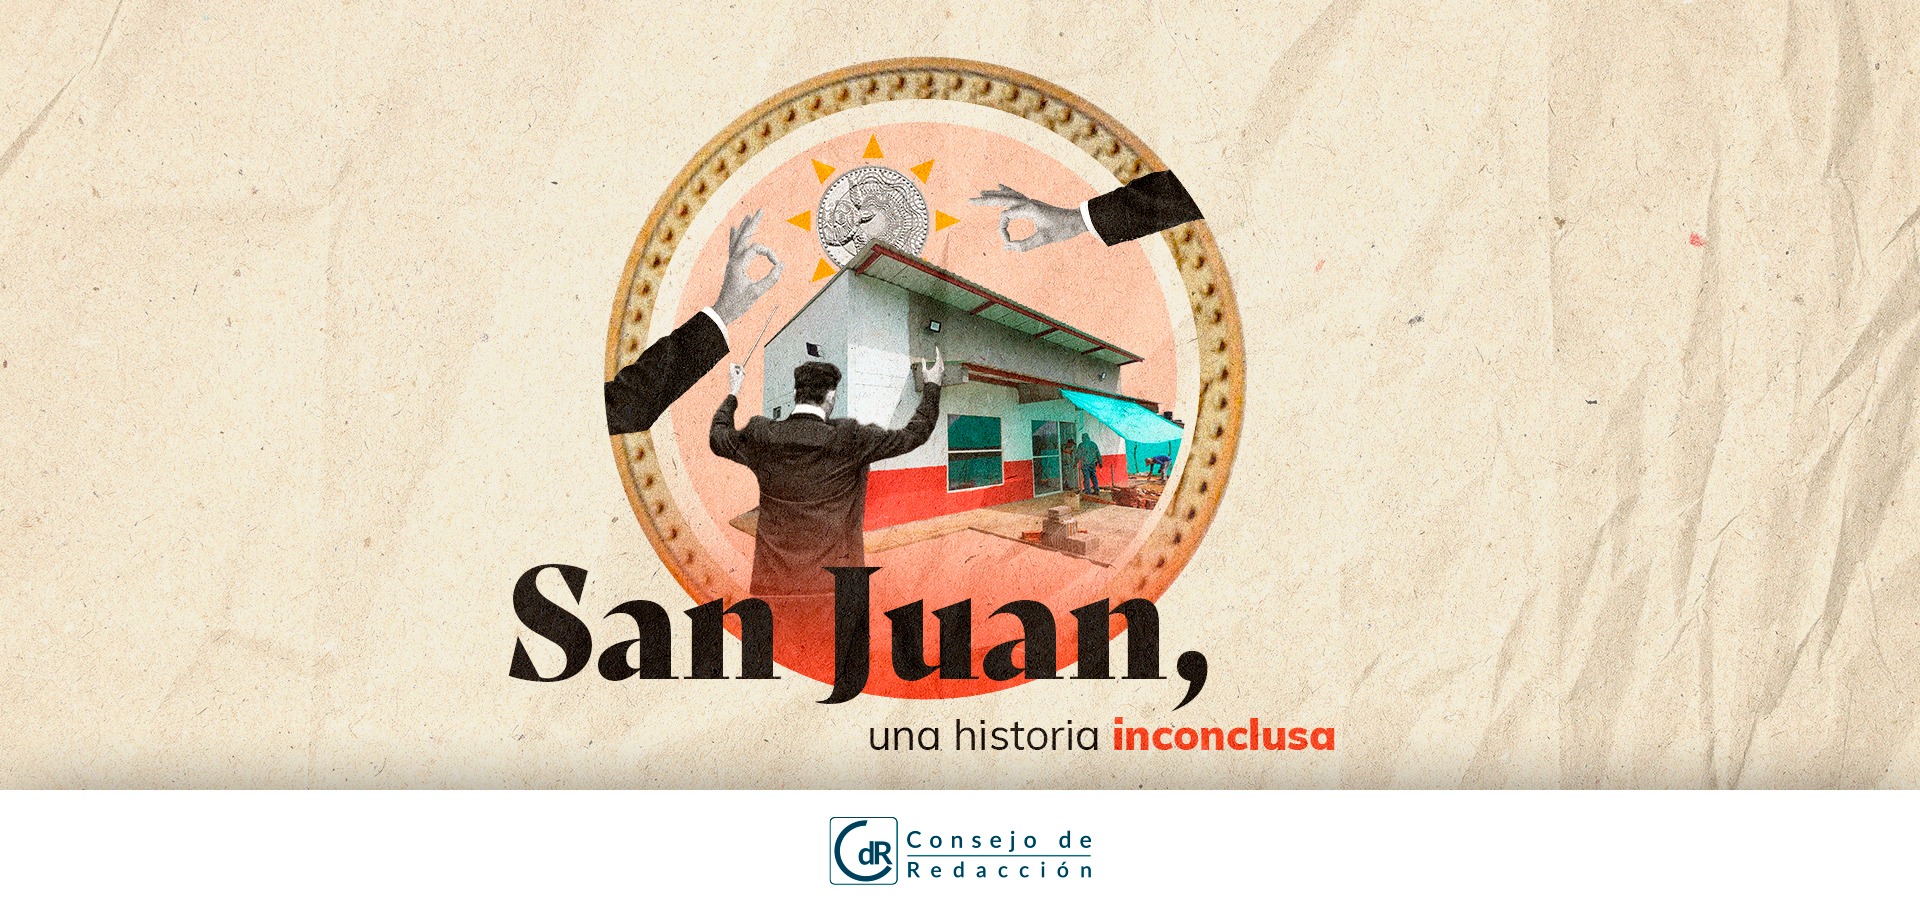 San Juan, una historia inconclusa